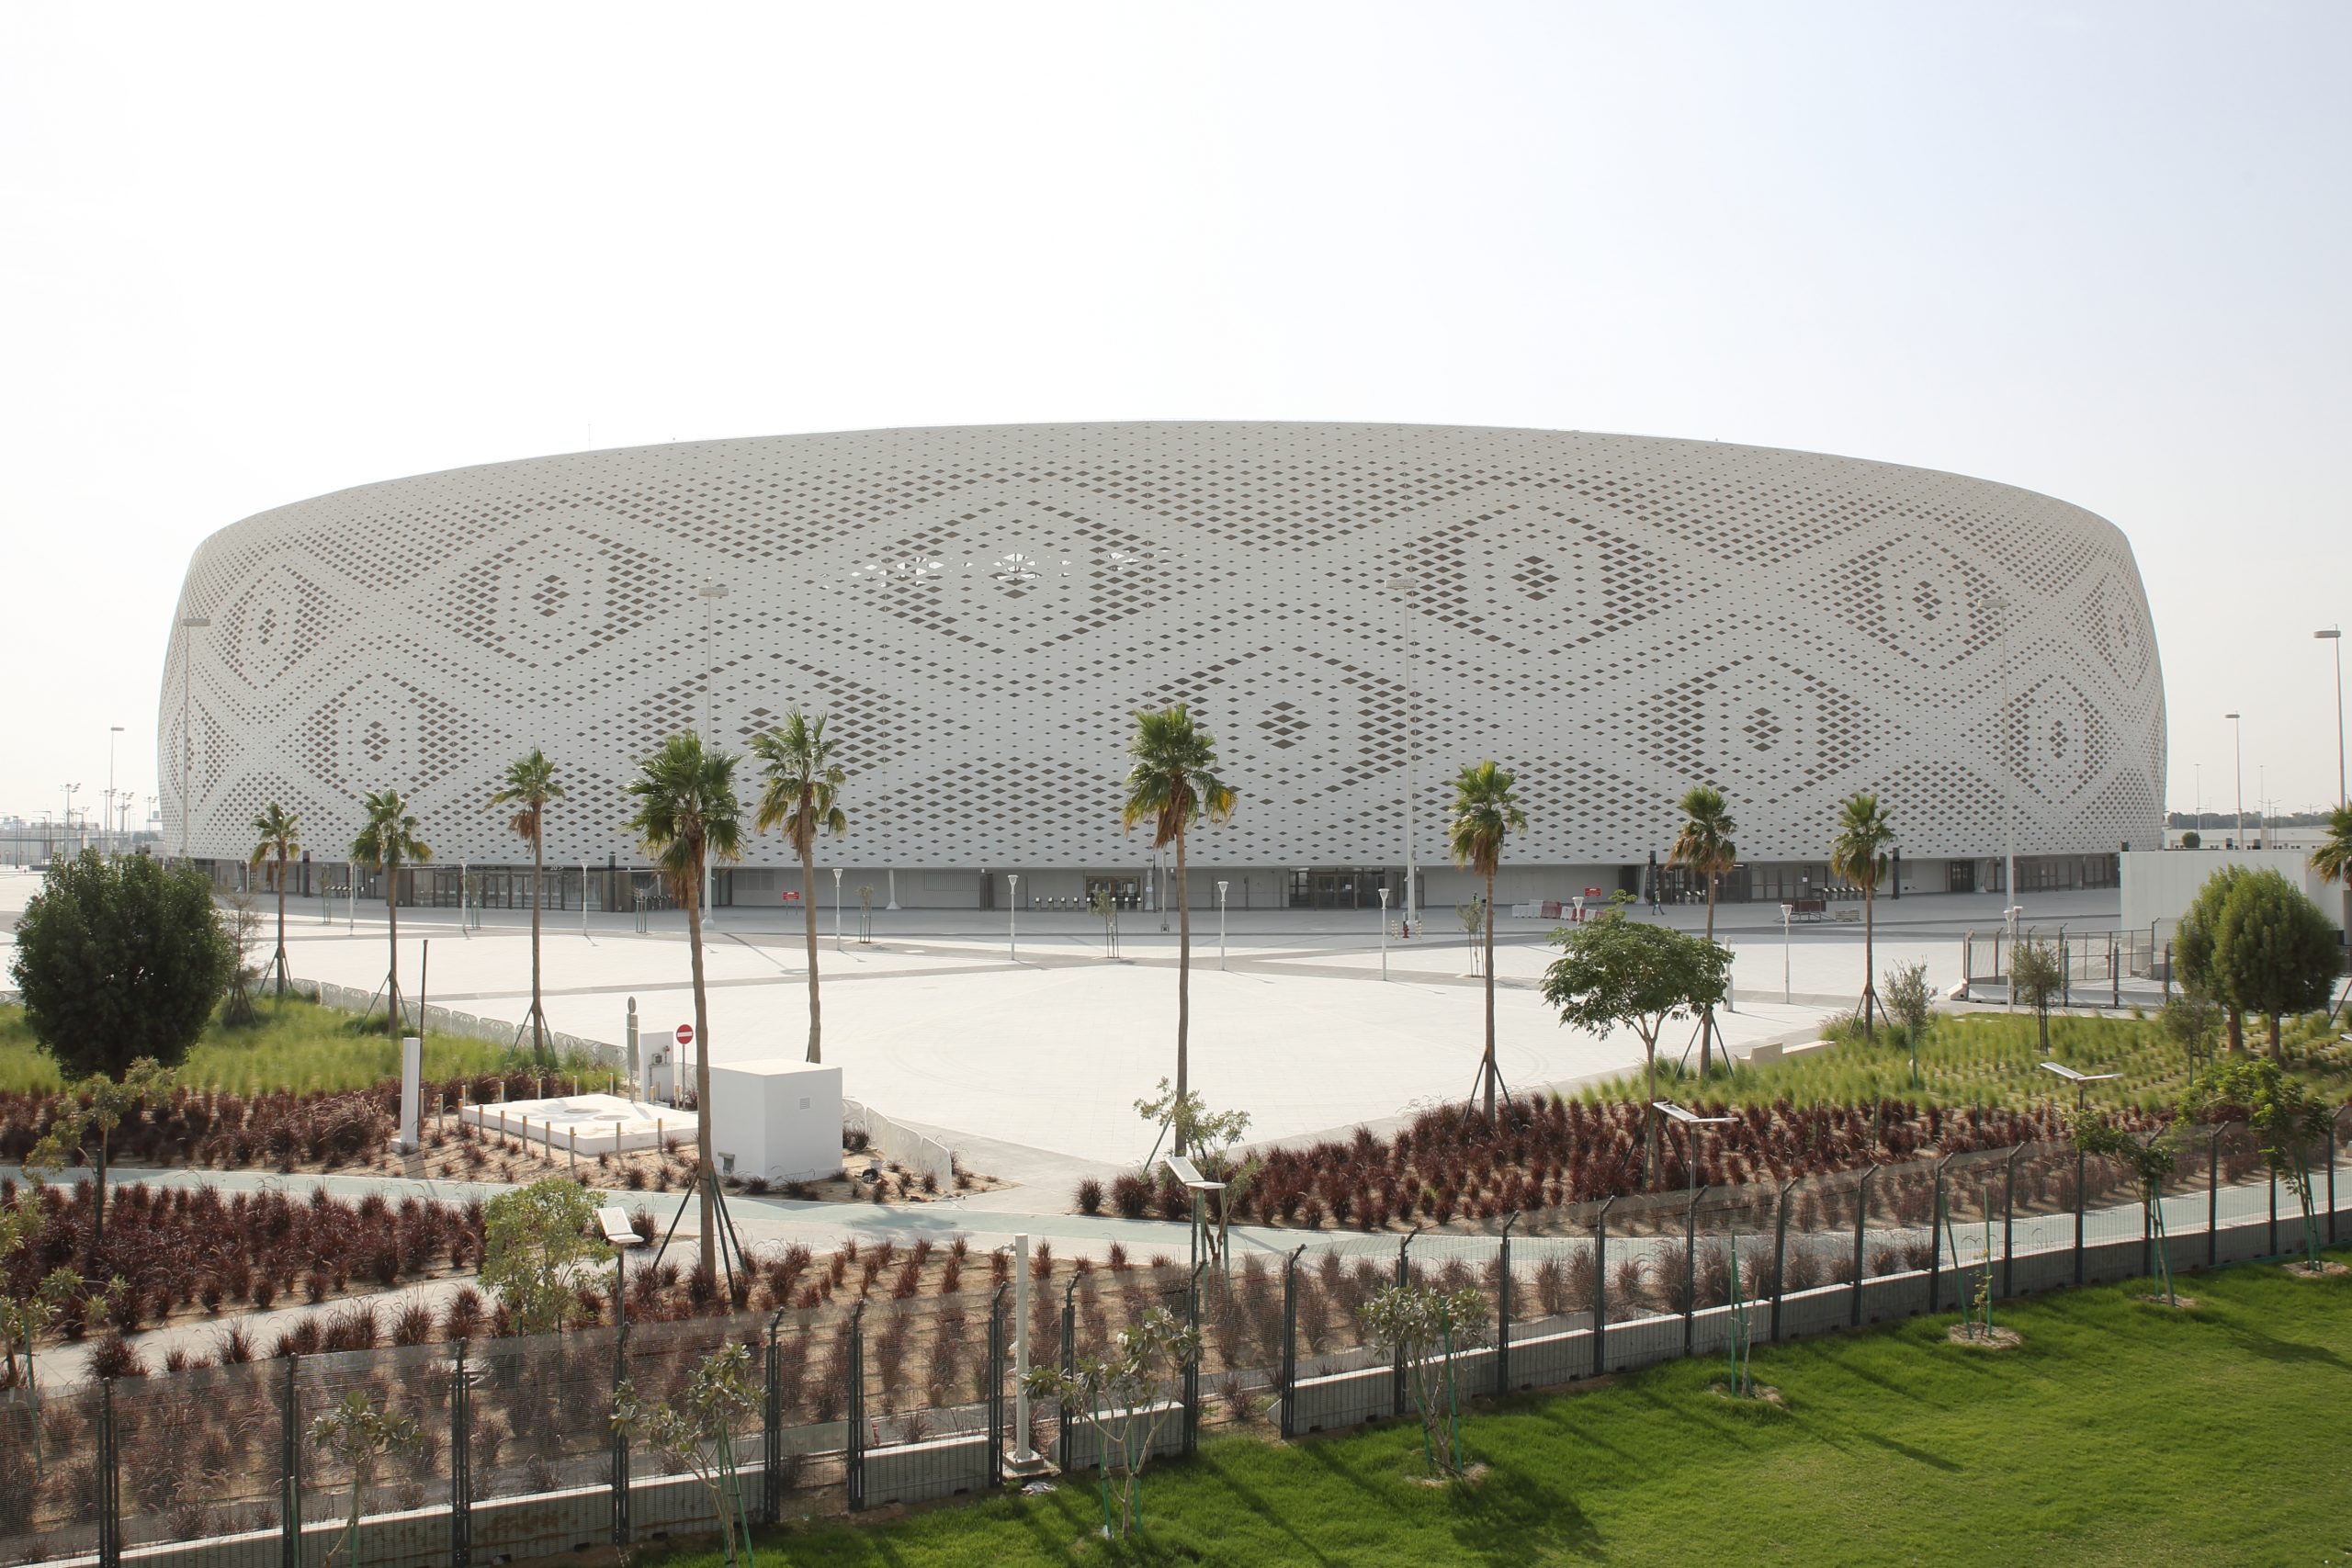 Stadion w Katarze, fot. Colin McPhedran / Shutterstock.com